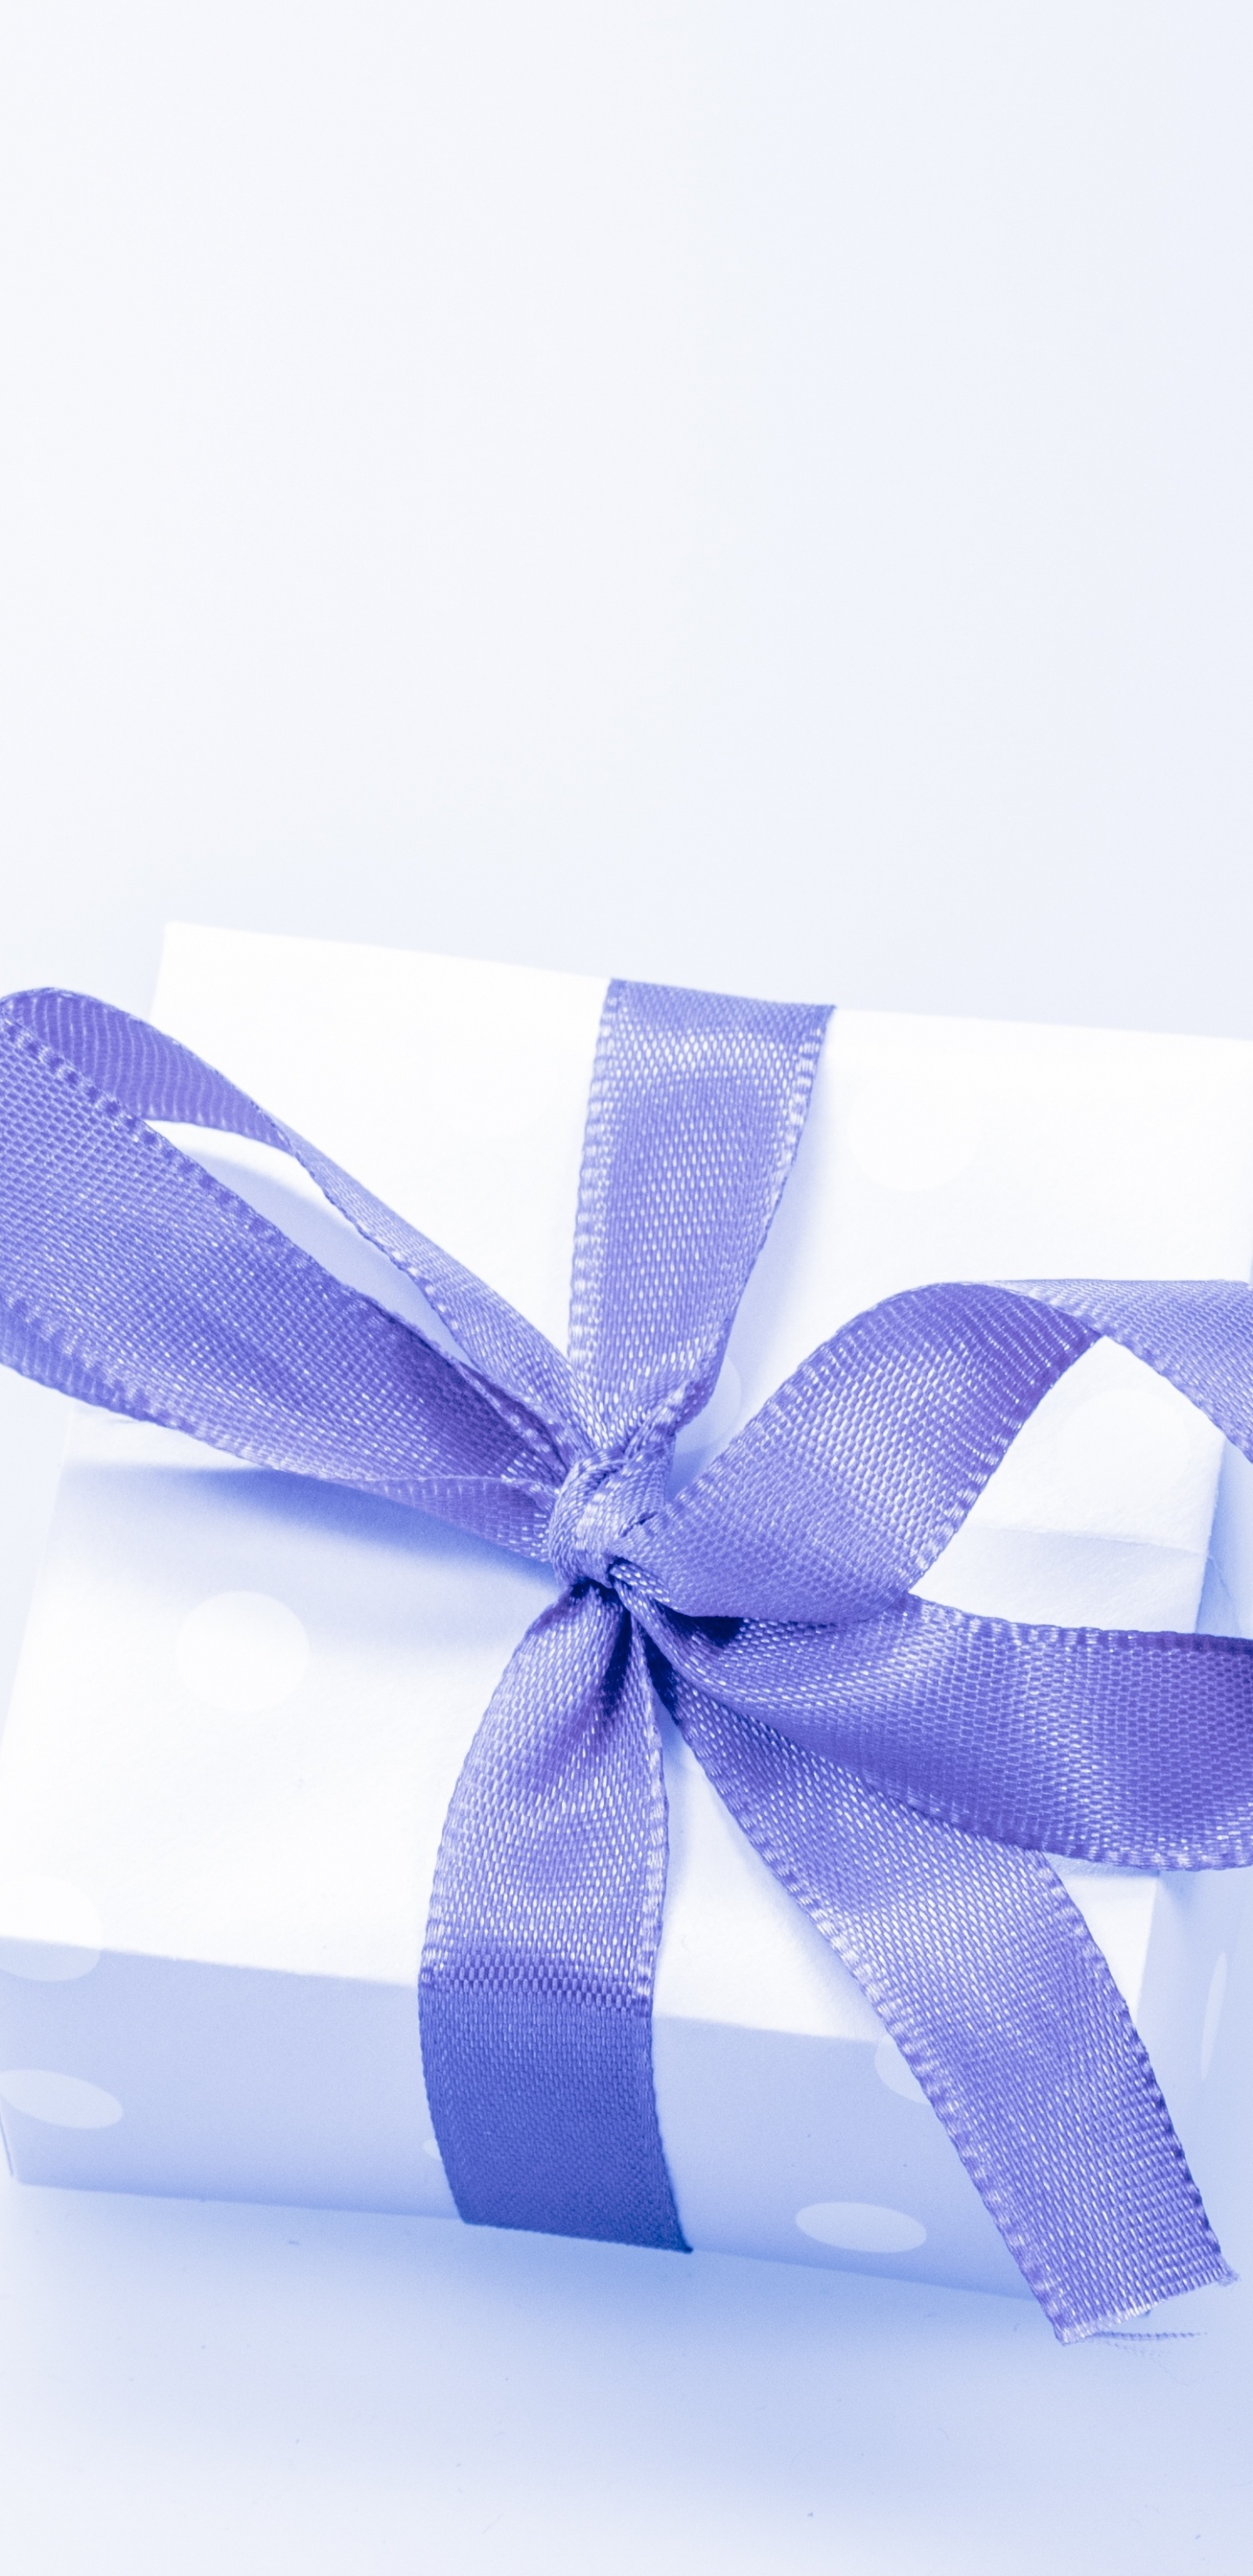 礼物, 礼品卡, 礼品包装, 丝带, 紫罗兰色 壁纸 1440x2960 允许